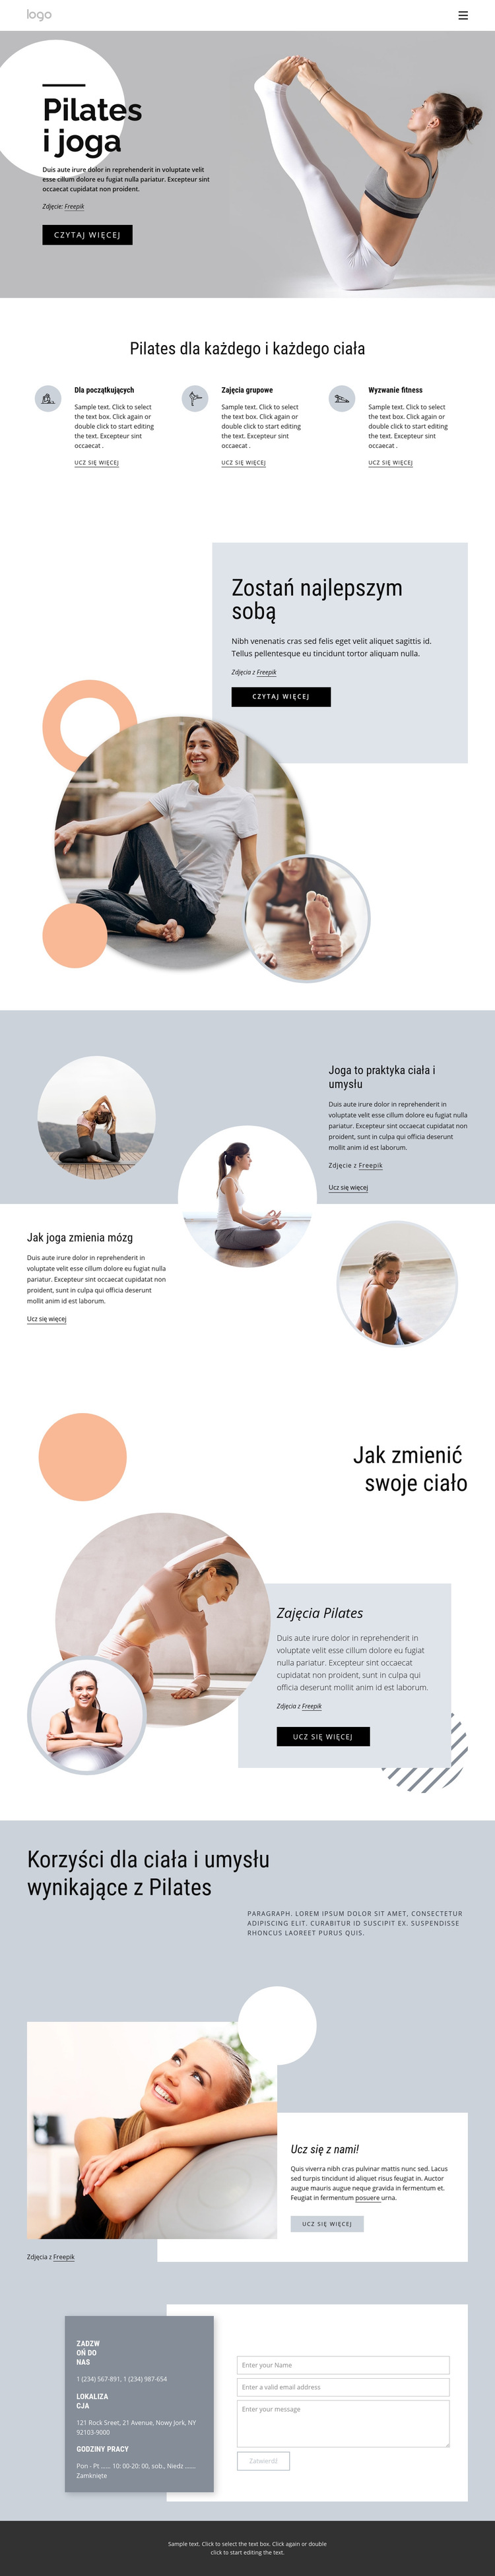 Pilates i centrum jogi Szablon witryny sieci Web